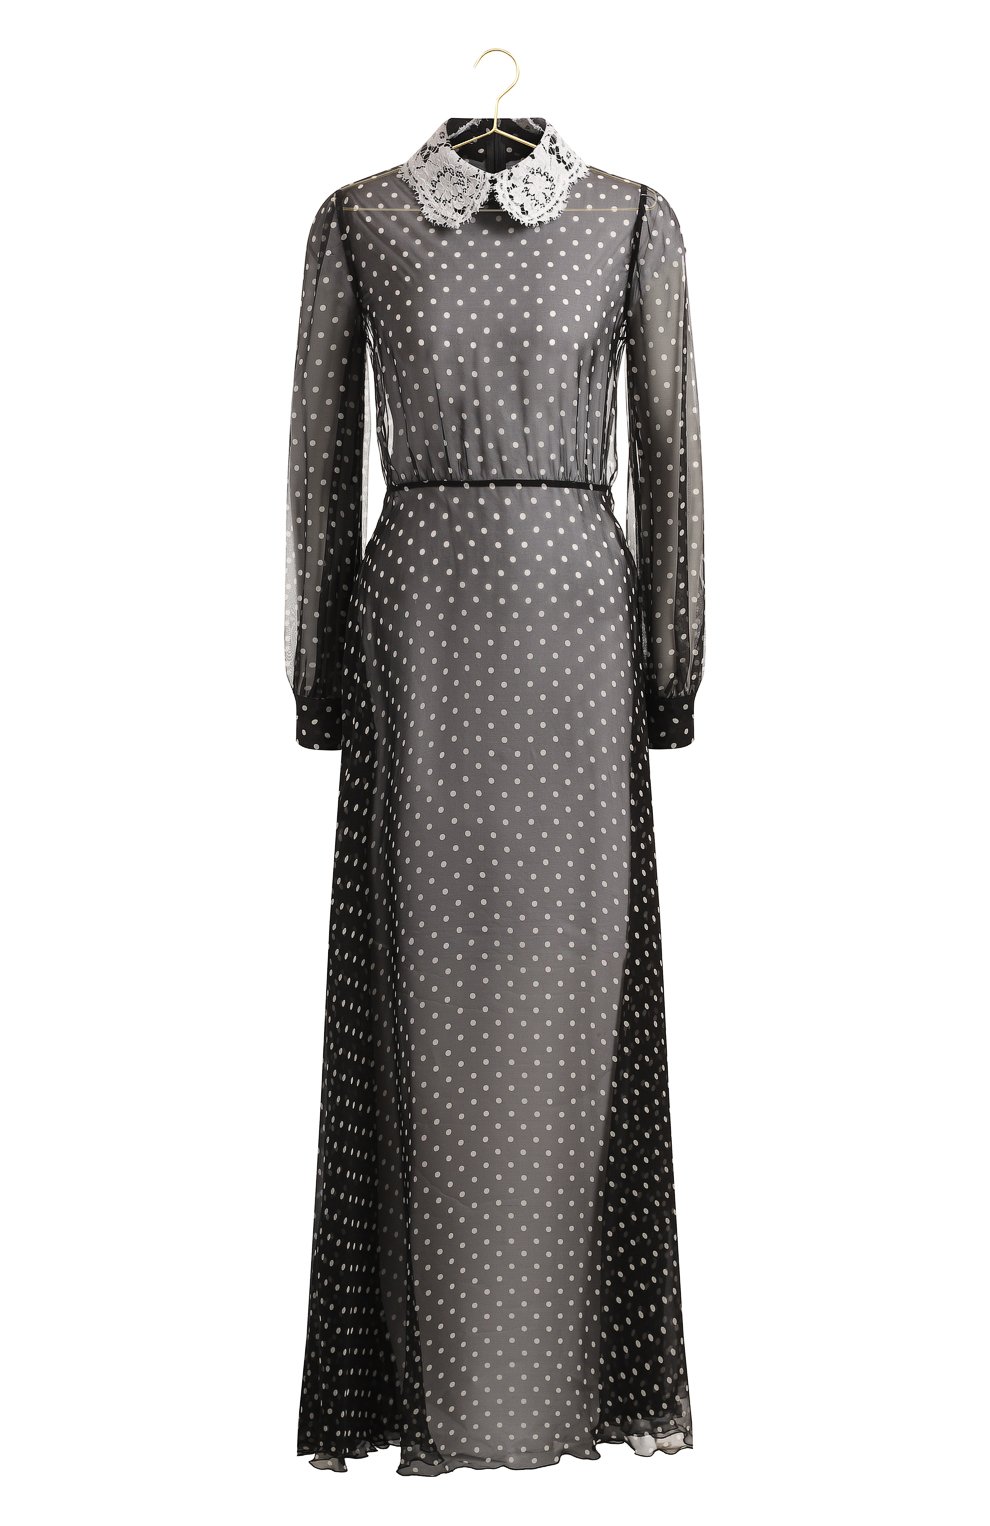 Шелковое платье | Valentino | Чёрно-белый - 1